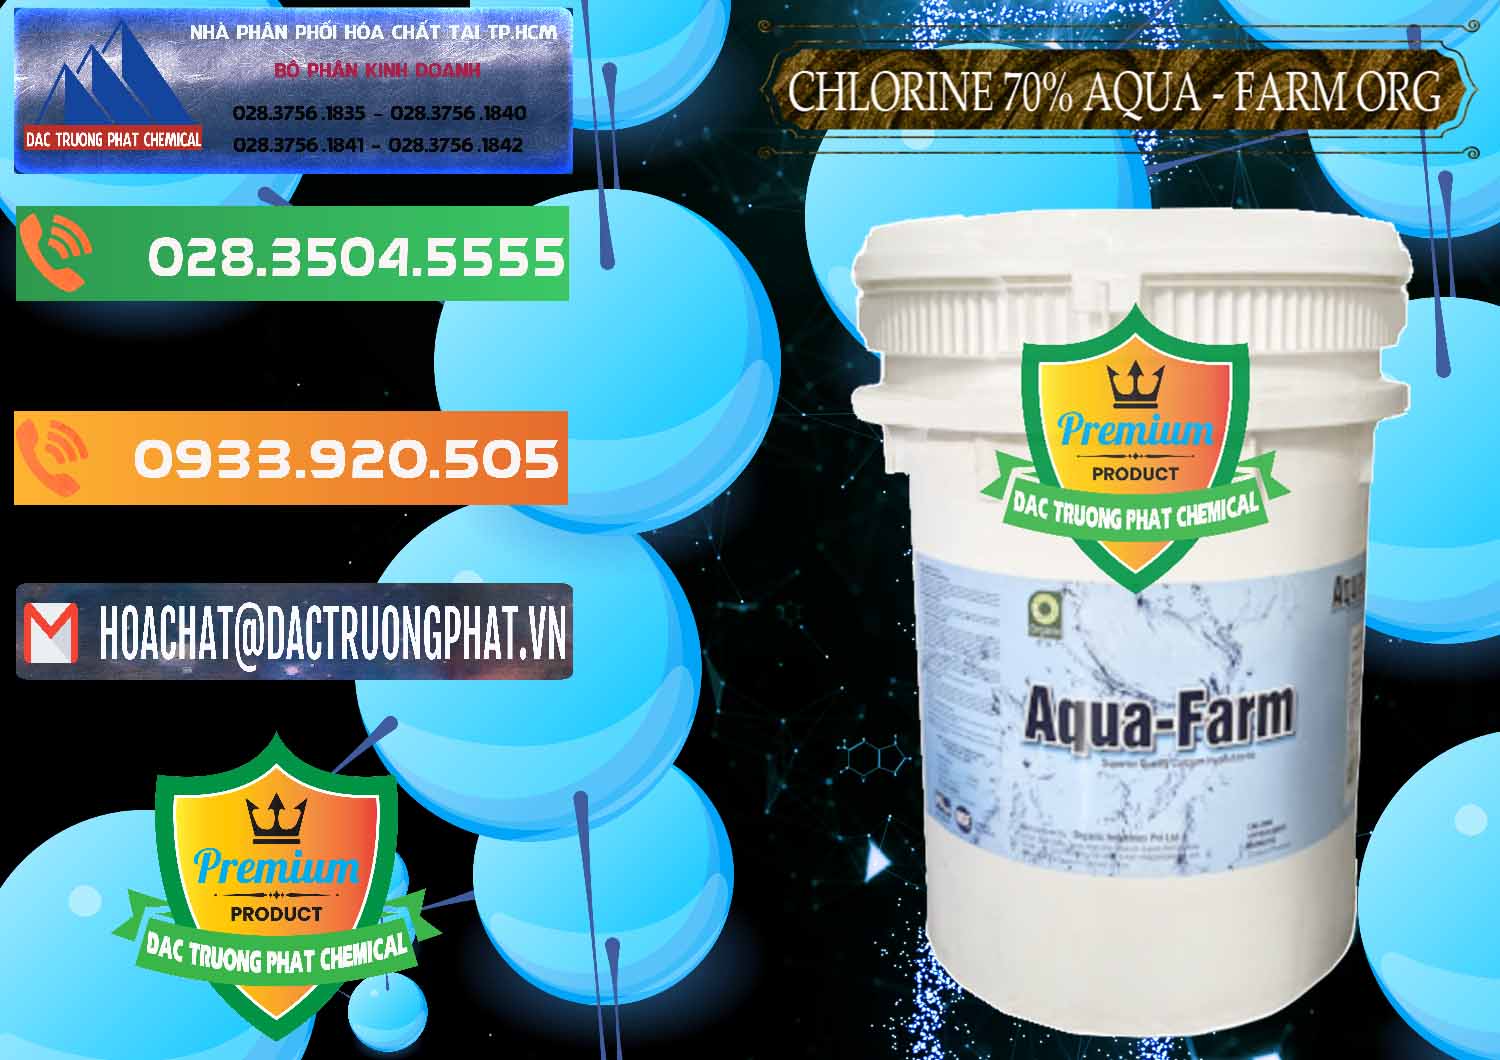 Công ty chuyên kinh doanh ( bán ) Chlorine – Clorin 70% Aqua - Farm ORG Organic Ấn Độ India - 0246 - Nơi phân phối - cung cấp hóa chất tại TP.HCM - hoachatxulynuoc.com.vn